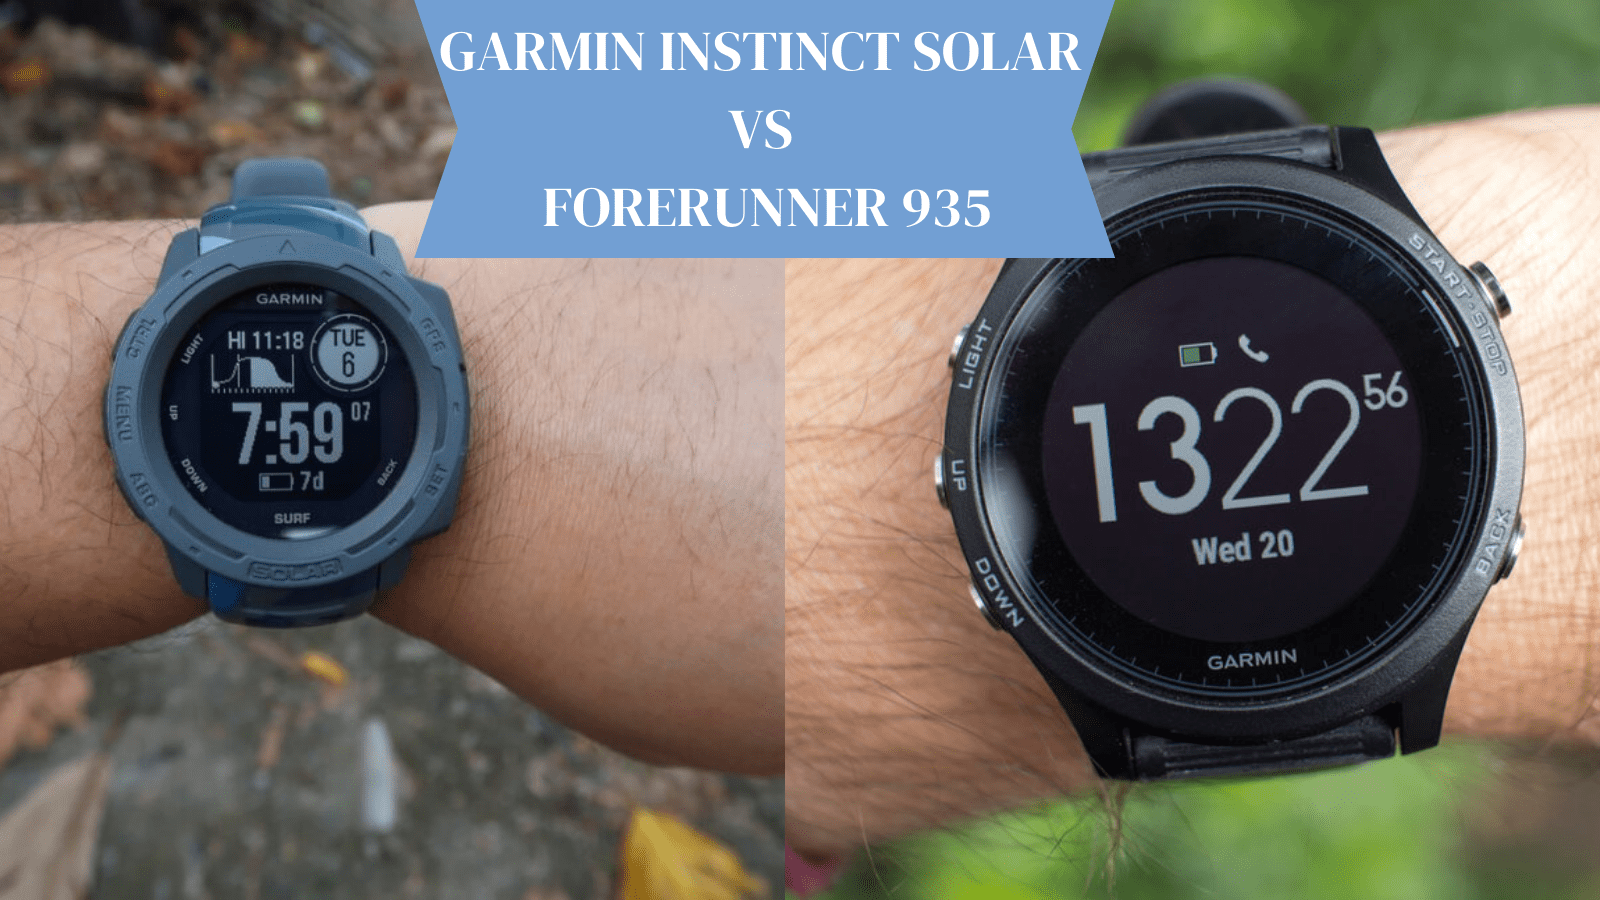 Garmin Instinct Solar vs Forerunner 935